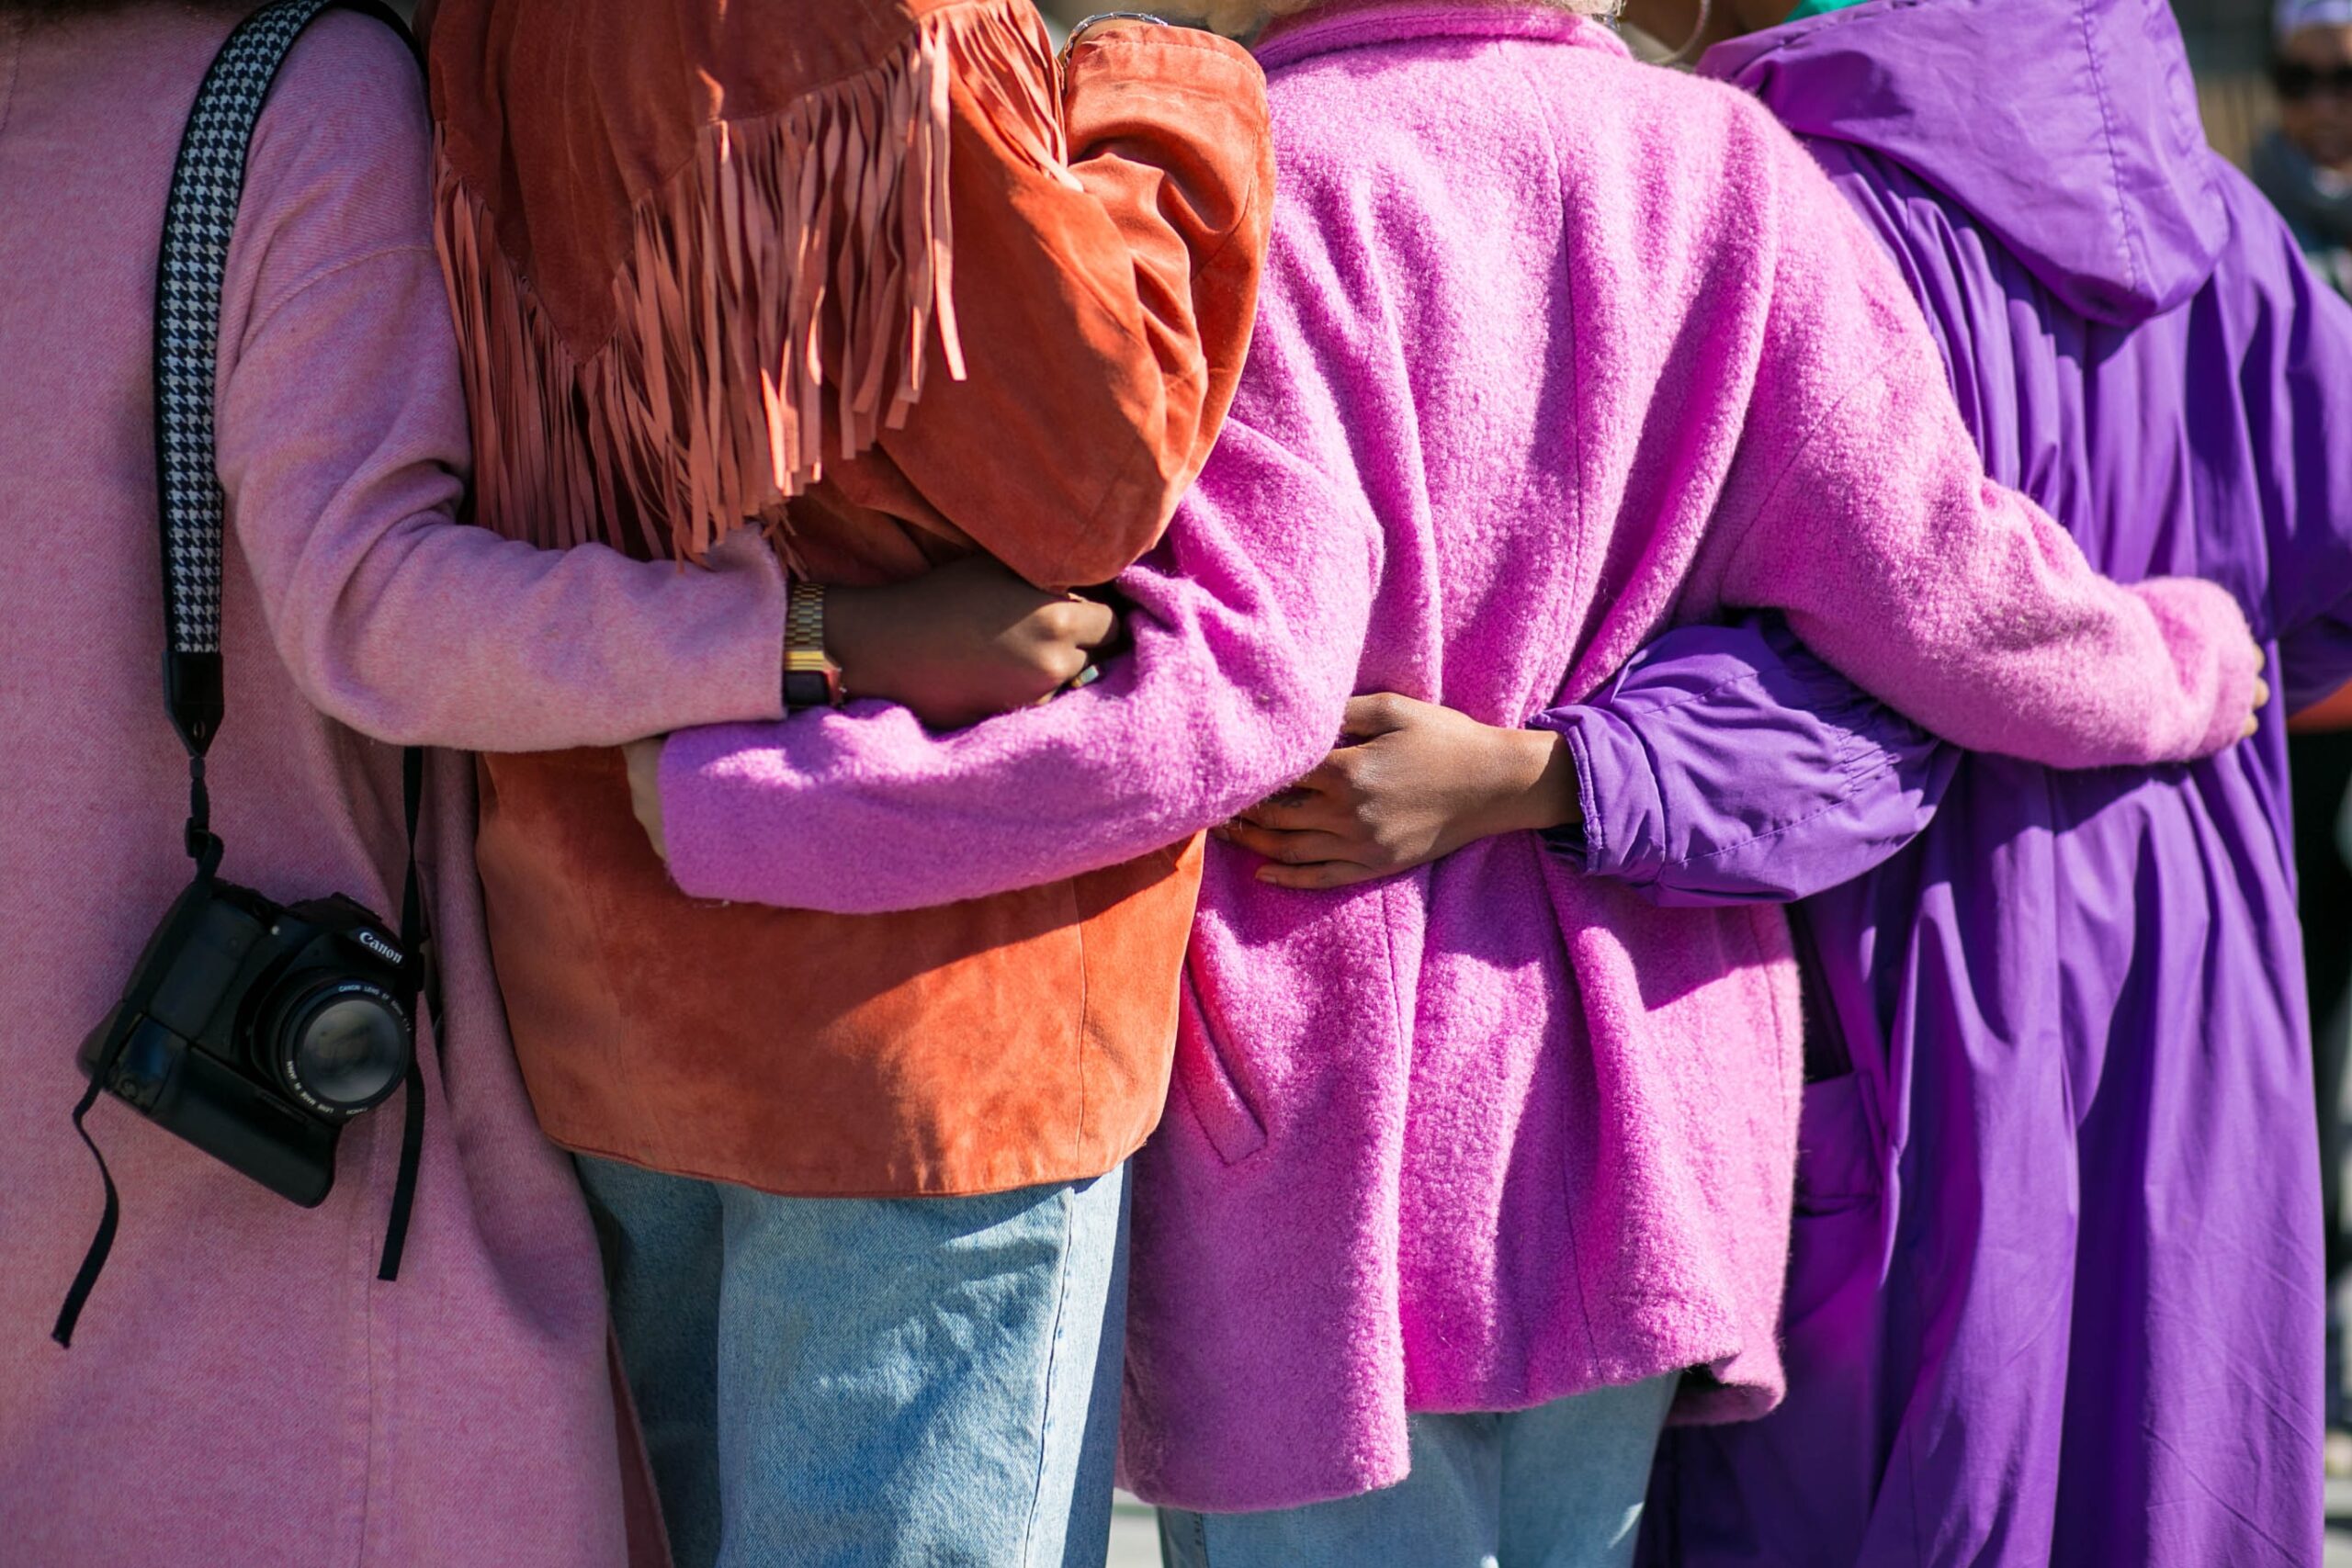 Women wearing shades of purple